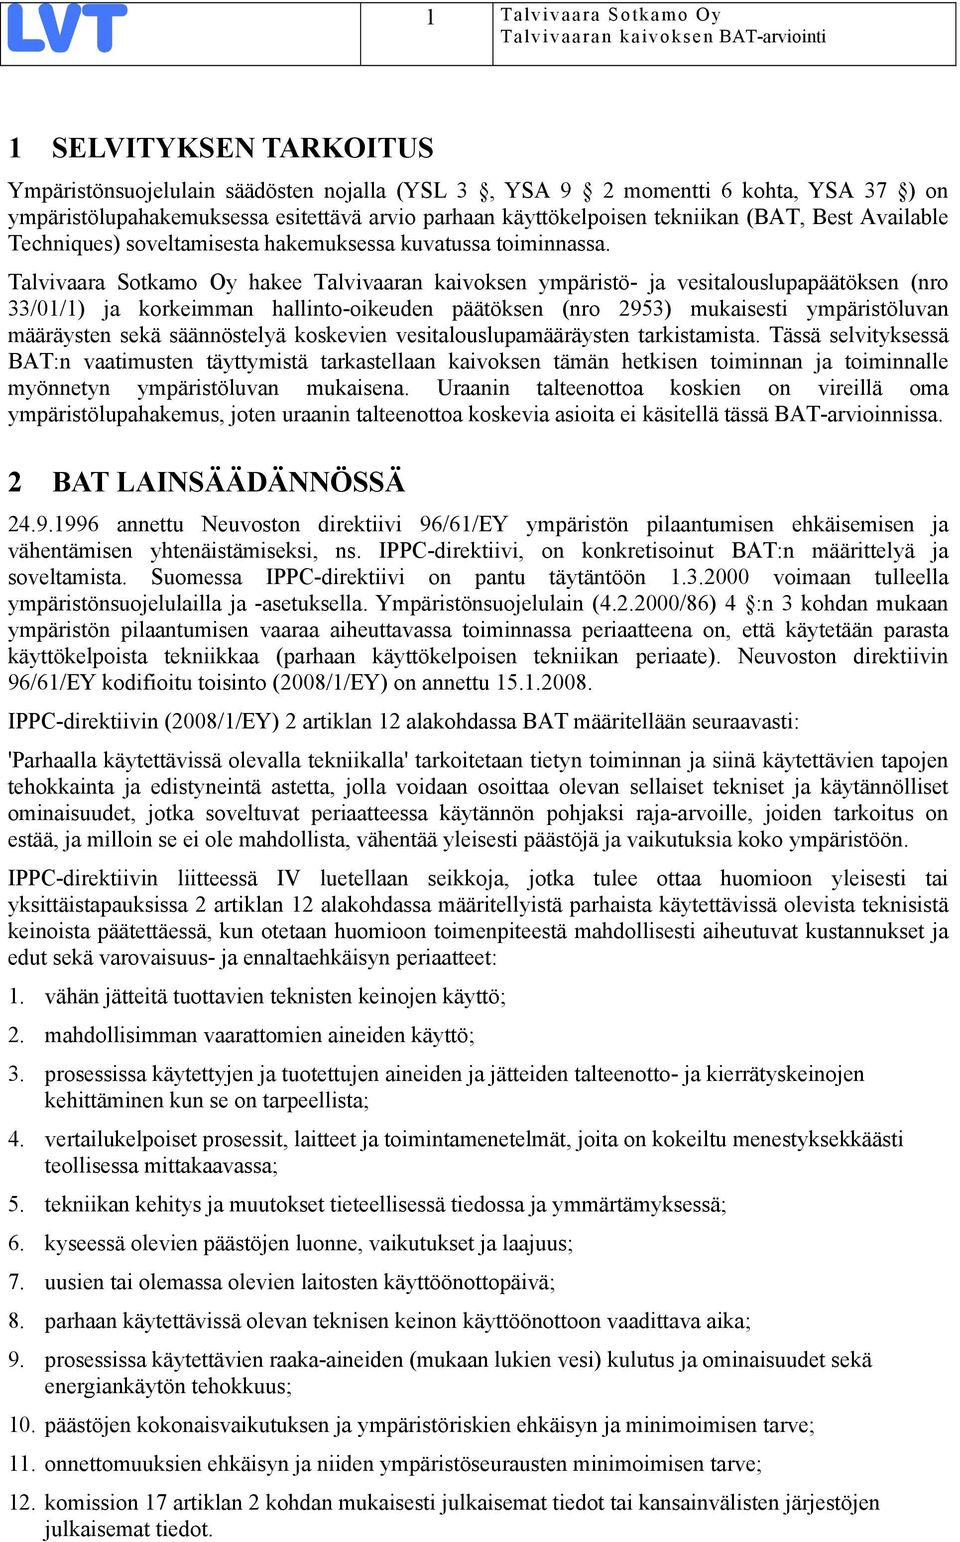 Talvivaara Sotkamo Oy hakee Talvivaaran kaivoksen ympäristö- ja vesitalouslupapäätöksen (nro 33/01/1) ja korkeimman hallinto-oikeuden päätöksen (nro 2953) mukaisesti ympäristöluvan määräysten sekä